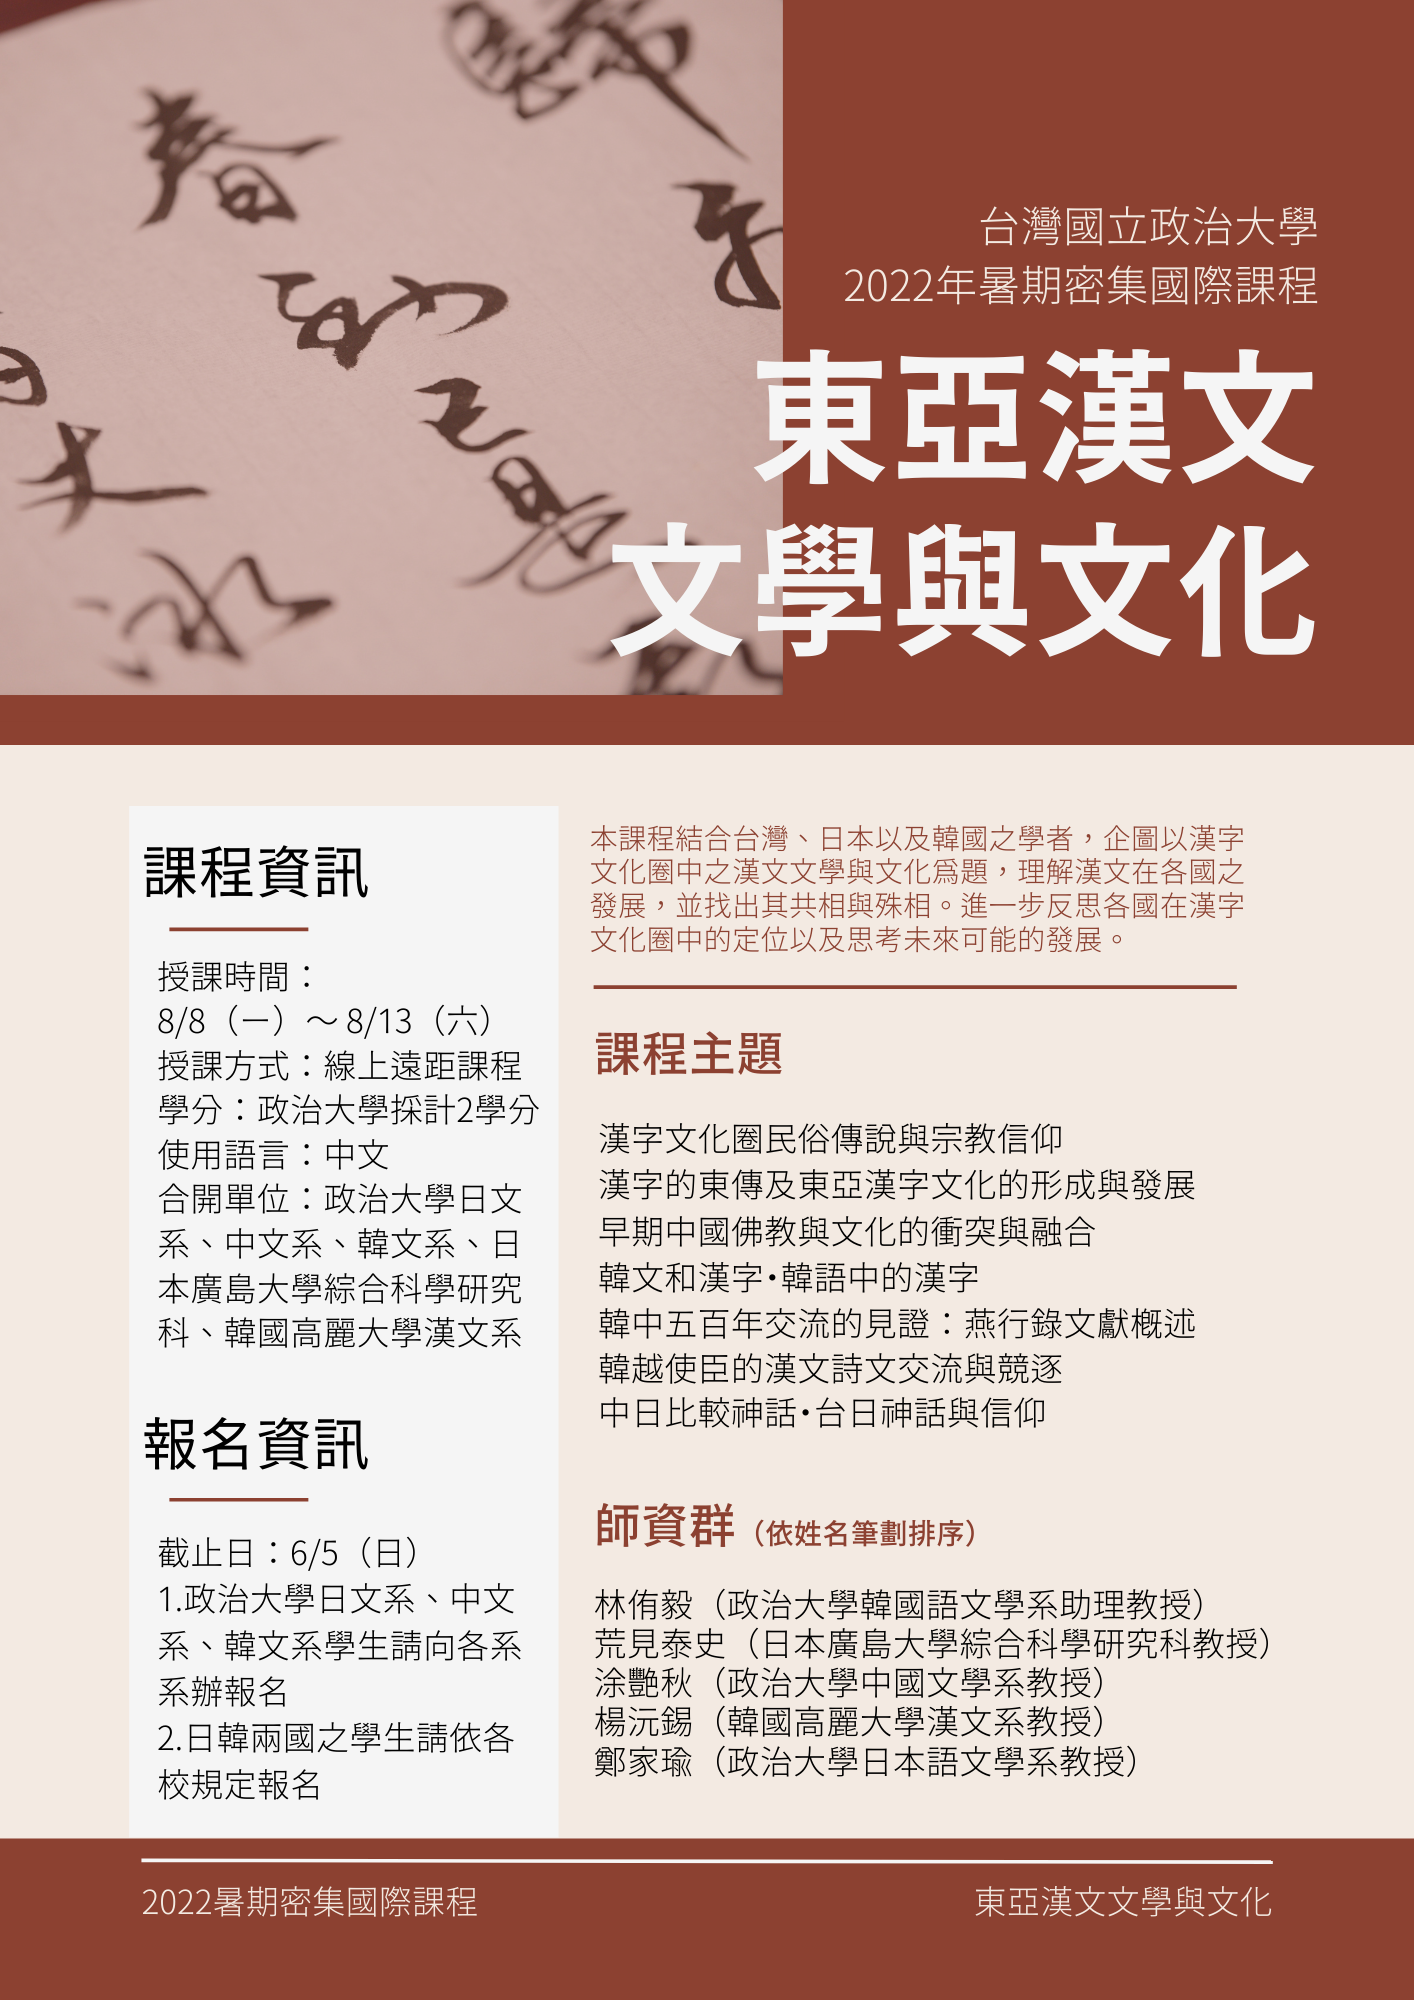 【課程】國立政治大學2022暑期密集國際課程『東亞漢文文學與文化』